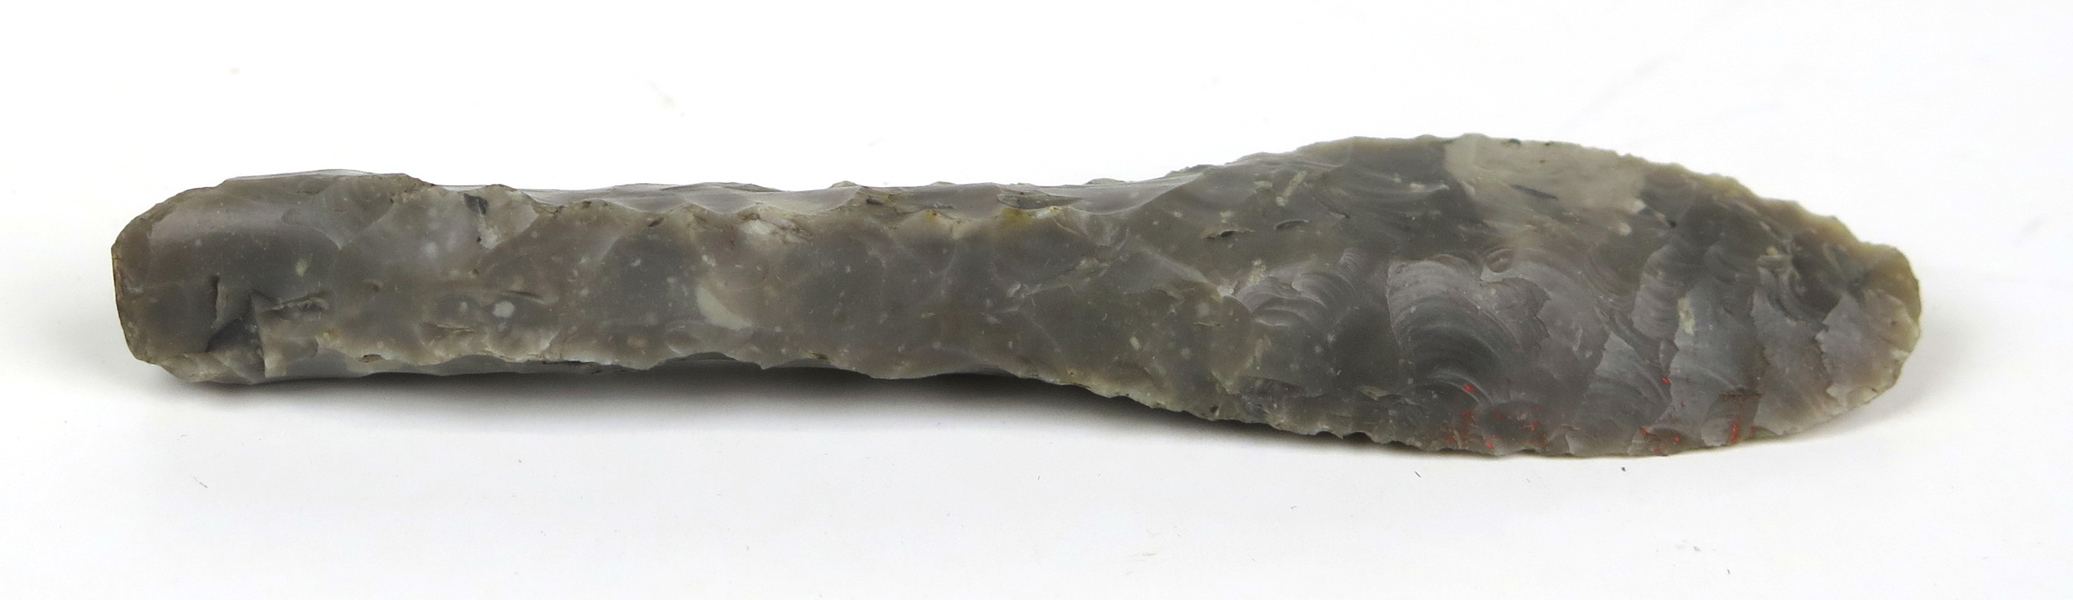 Spjutspets, flinta, lösfynd från yngre stenålder, cirka 2000 fKr, l 13 cm_35883a_lg.jpeg